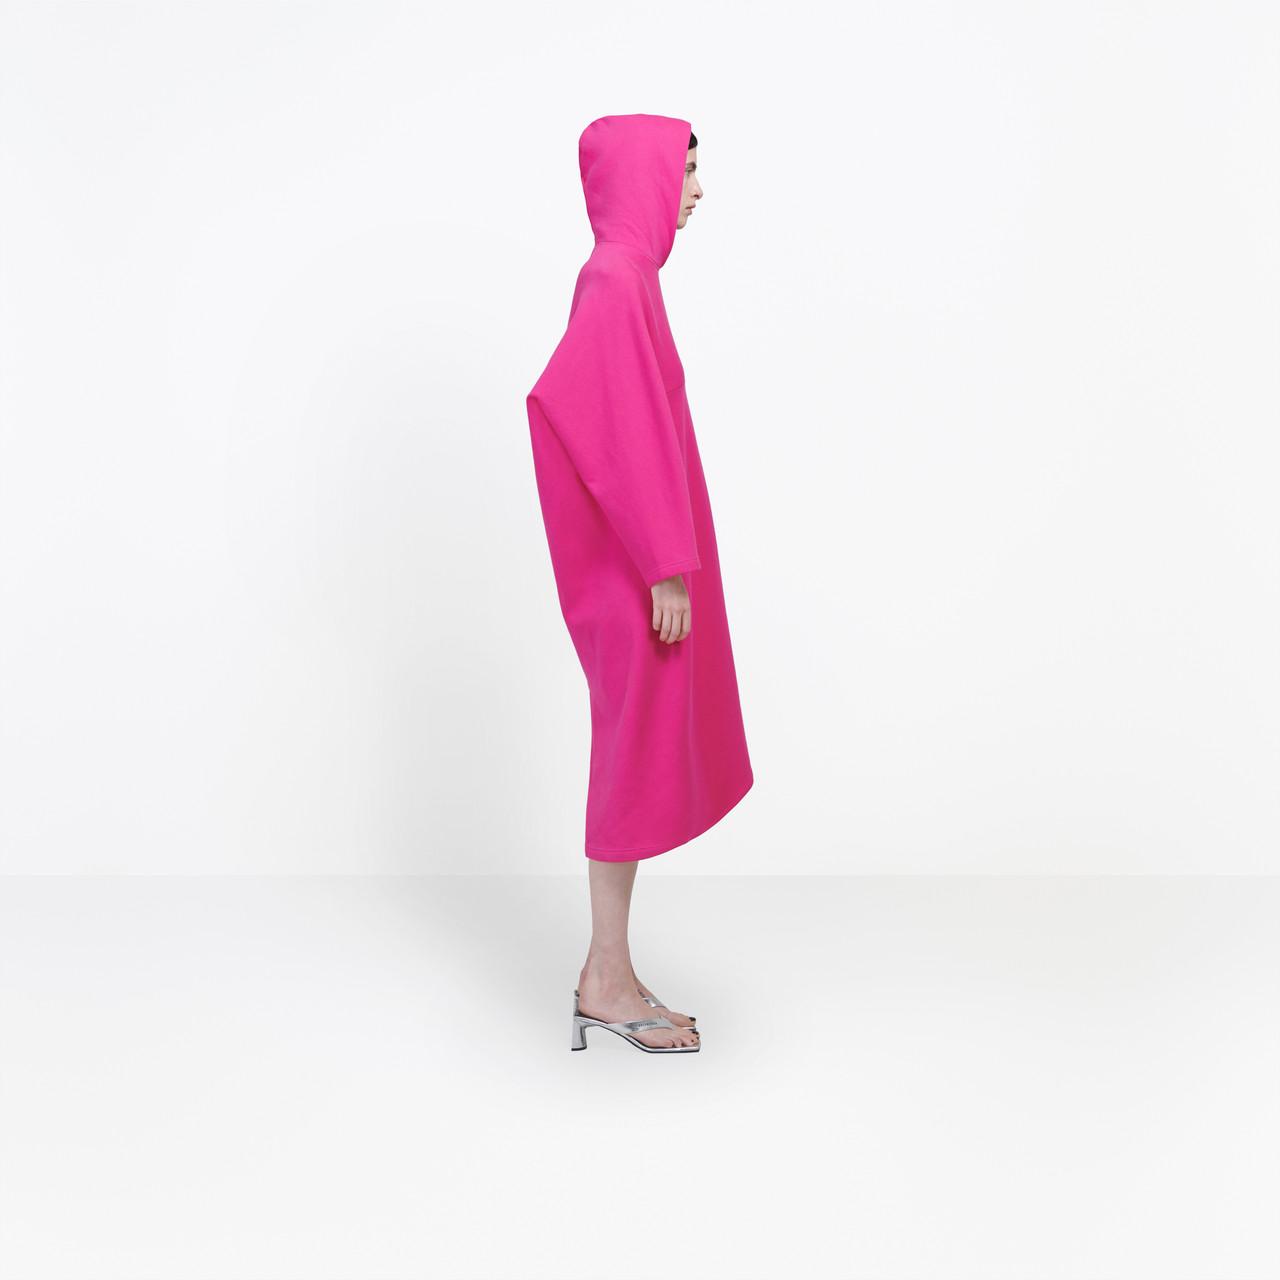 Balenciaga Fleece Cocoon Hooded Dress in Pink - Lyst